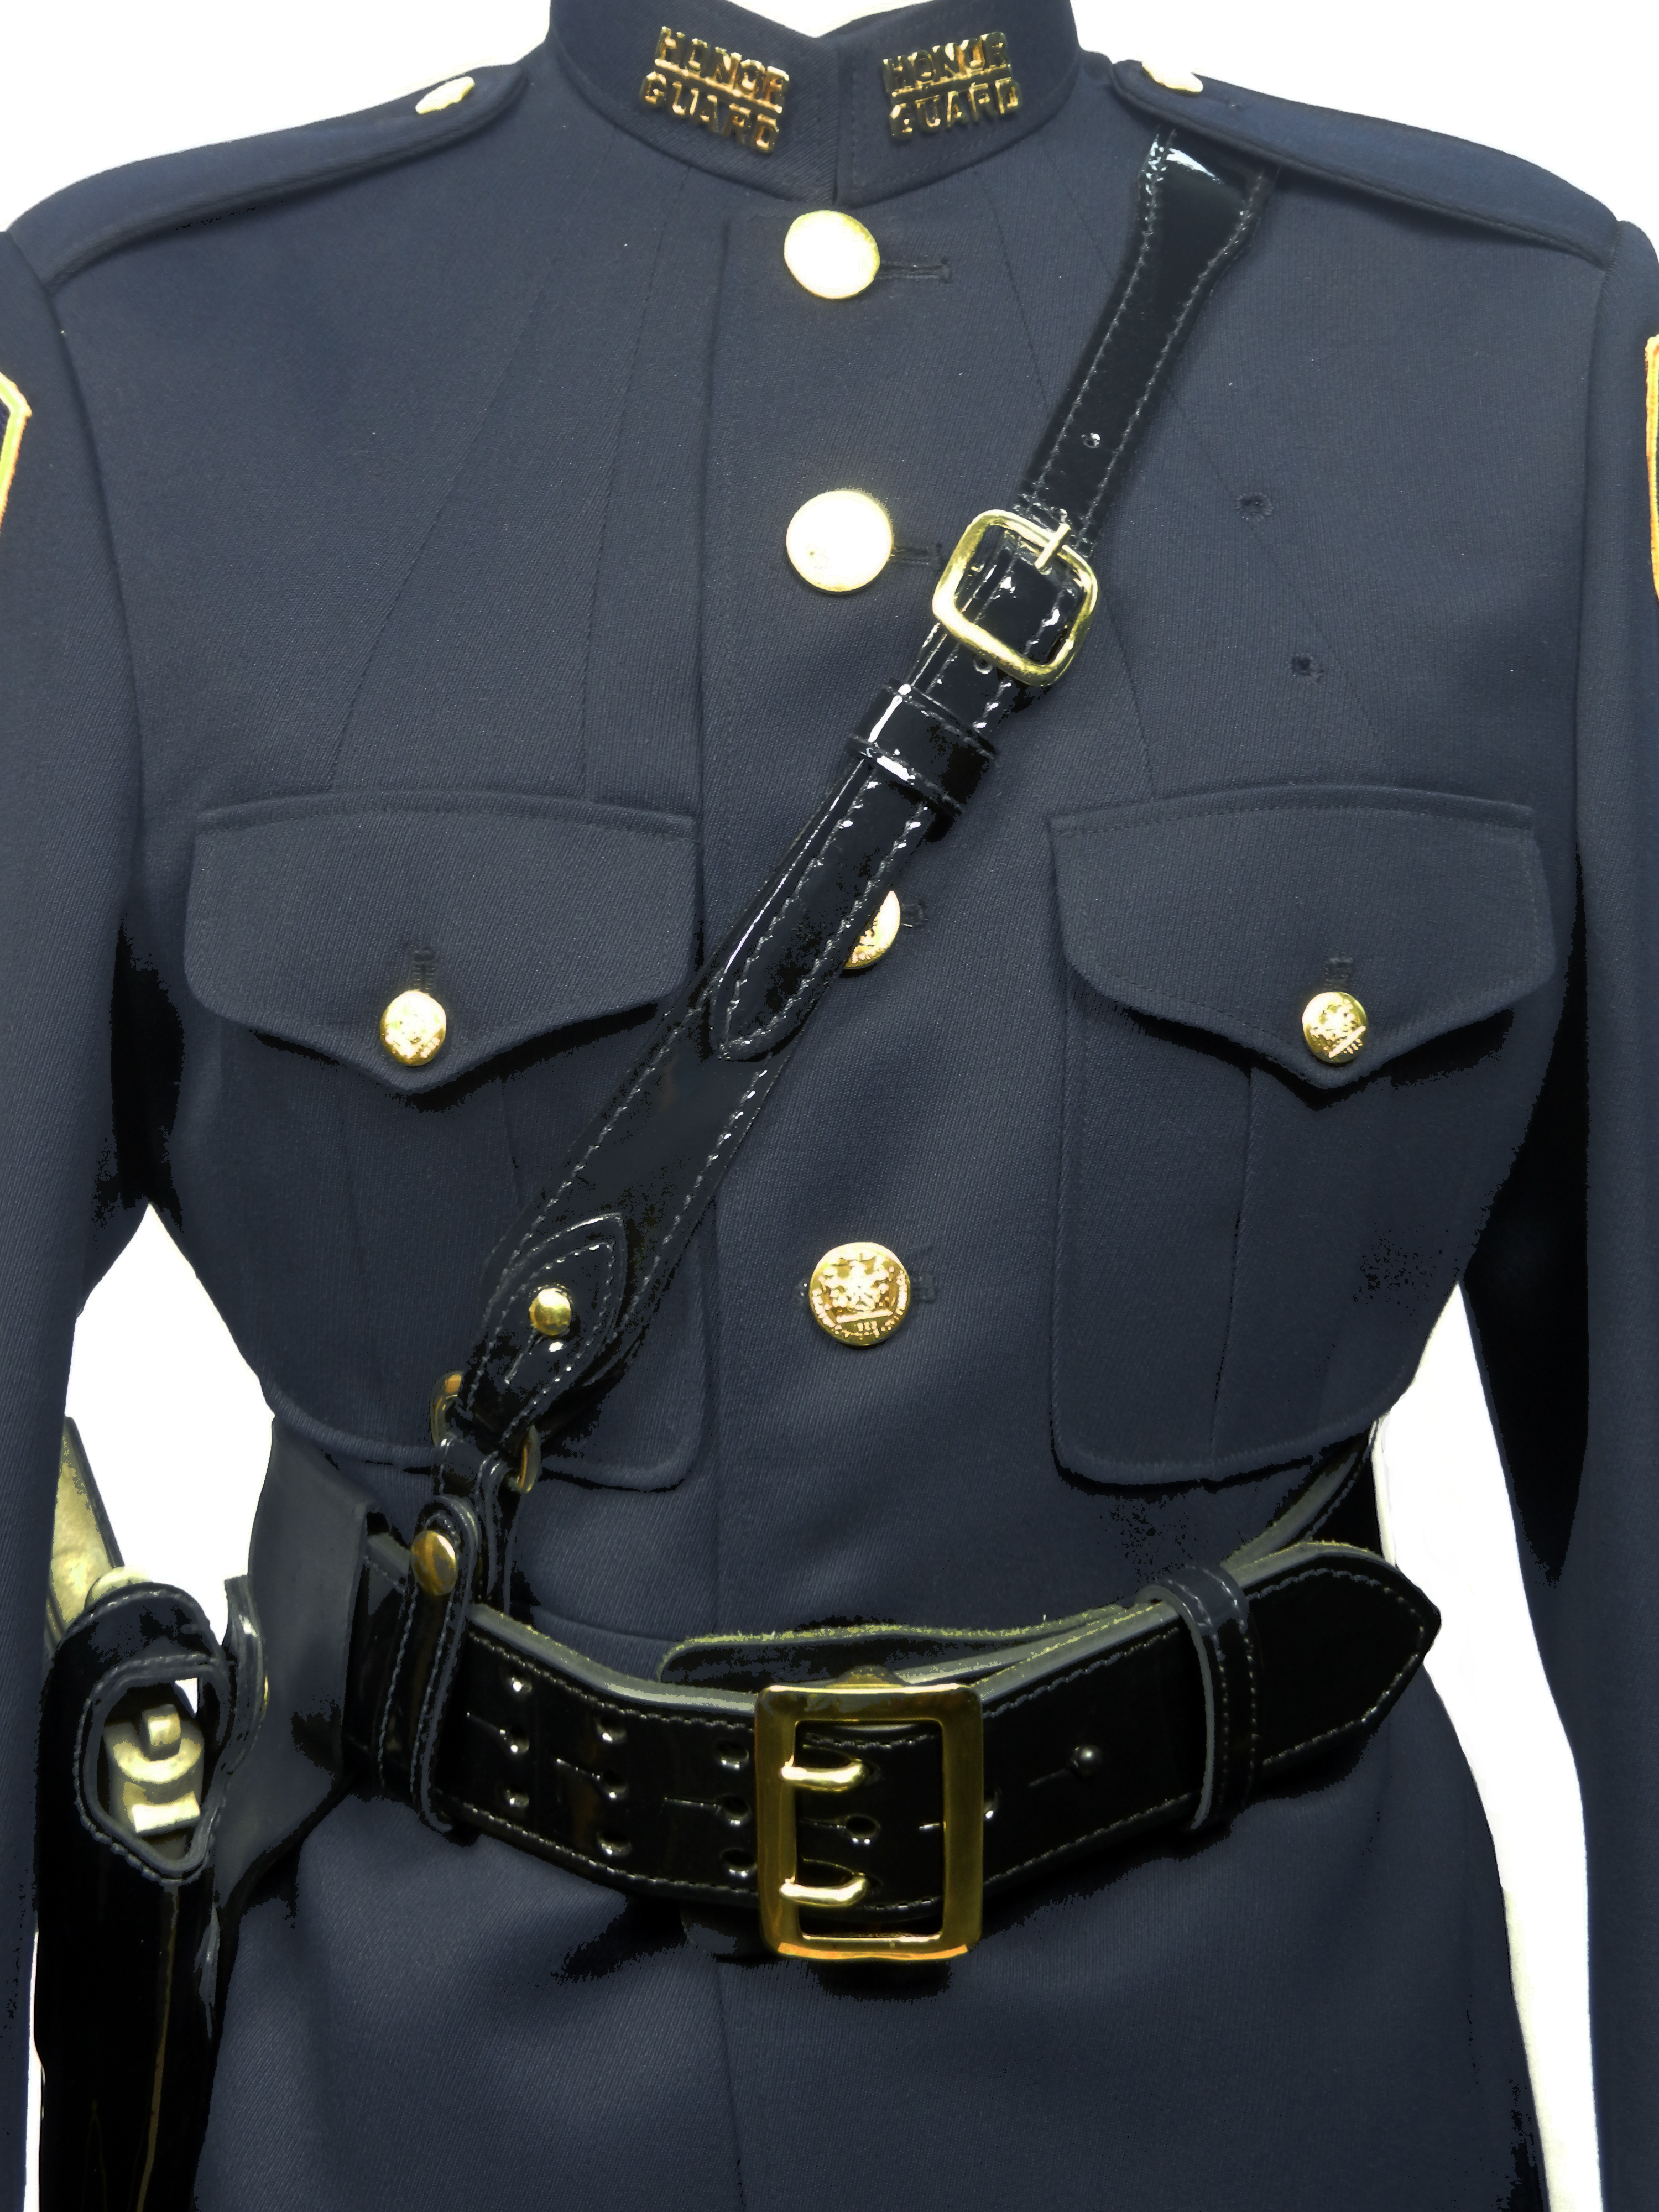 Honor Guard Uniform 103